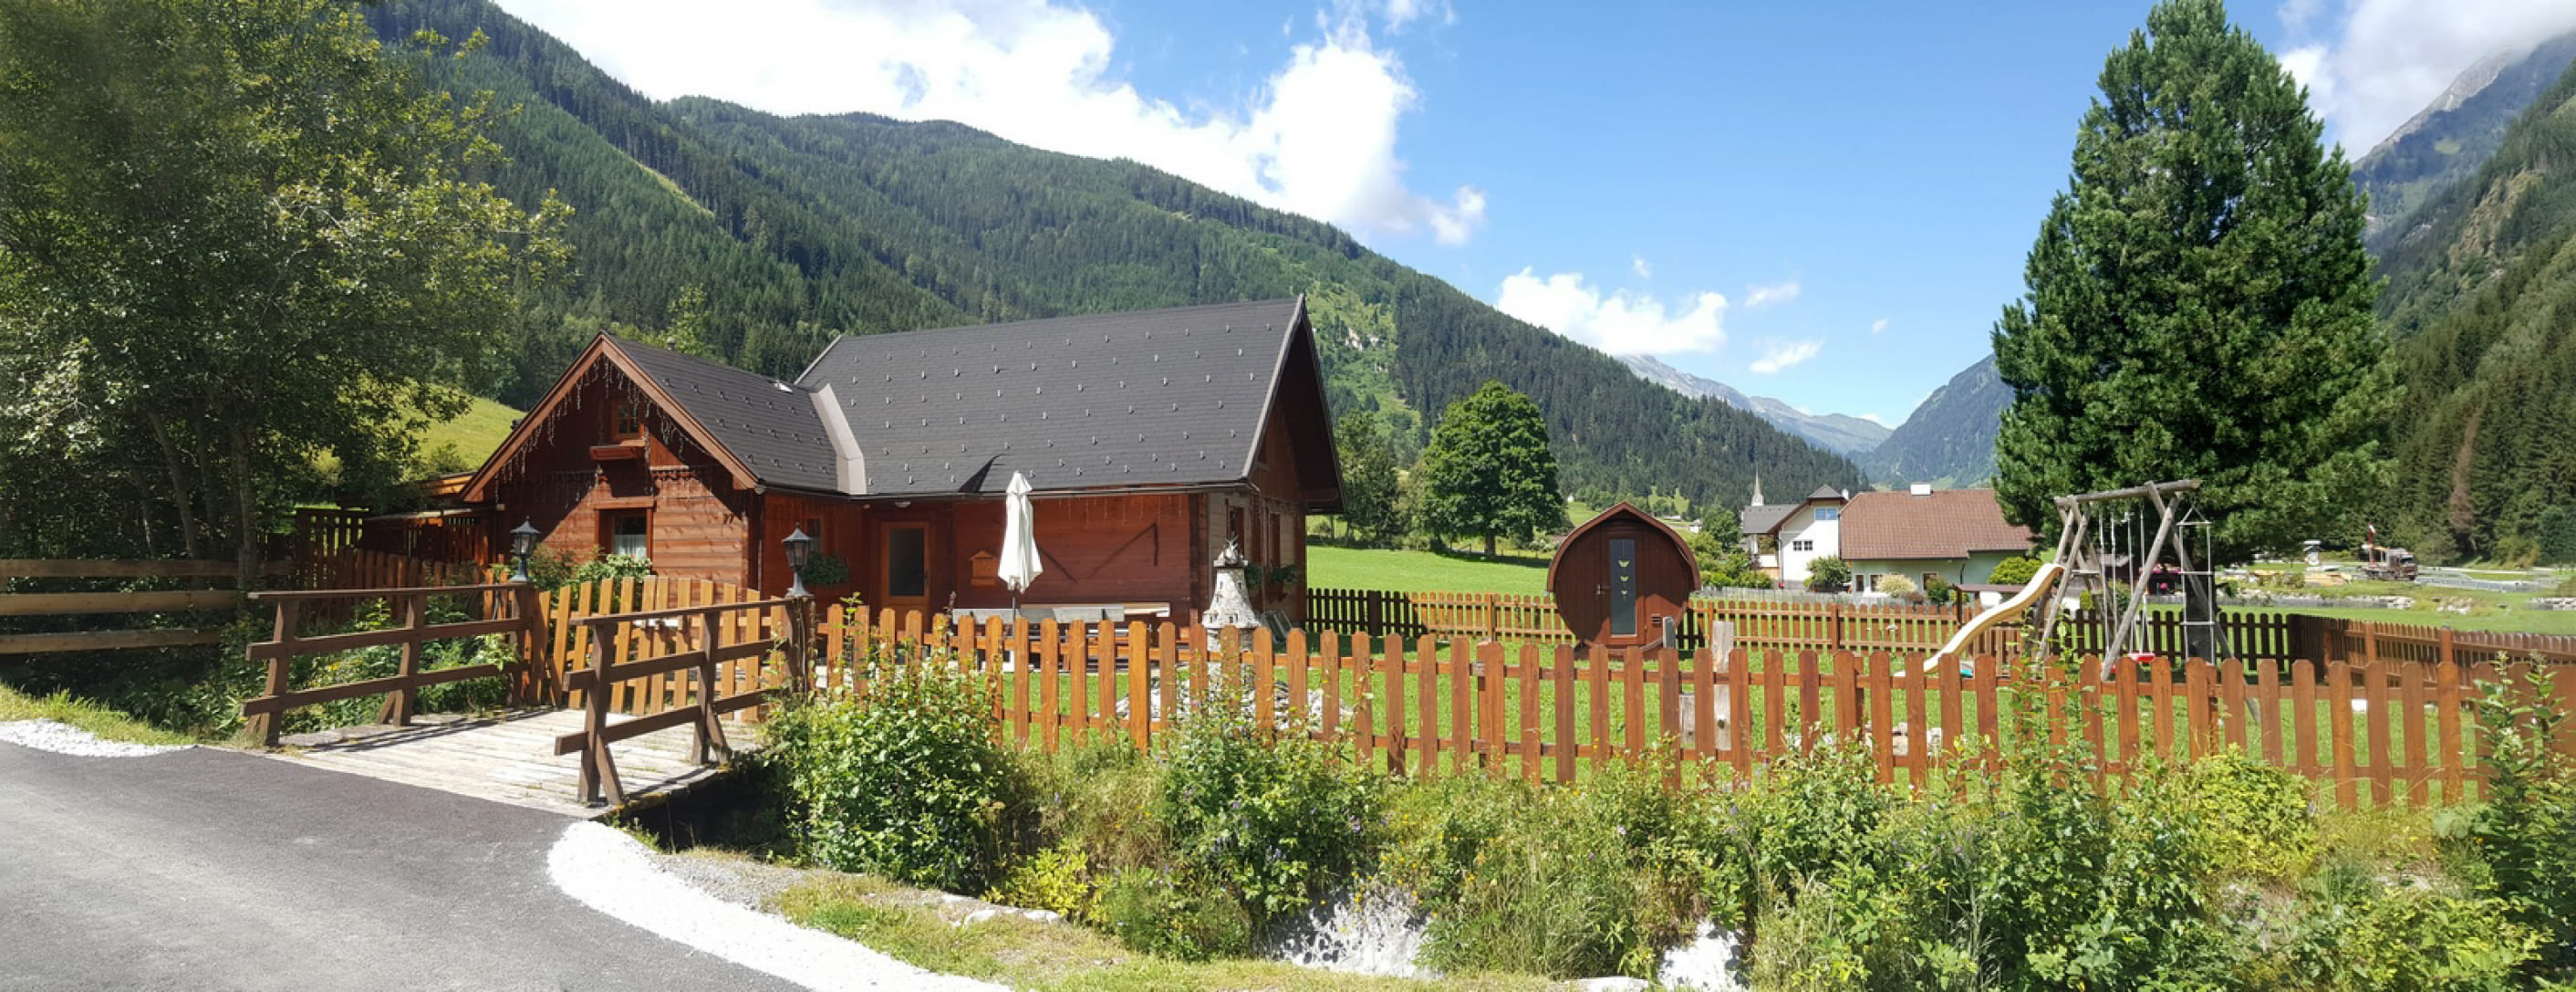 Murtalhütte im Salzburger Lungau für Ihren Sommerurlaub in ruhiger Lage